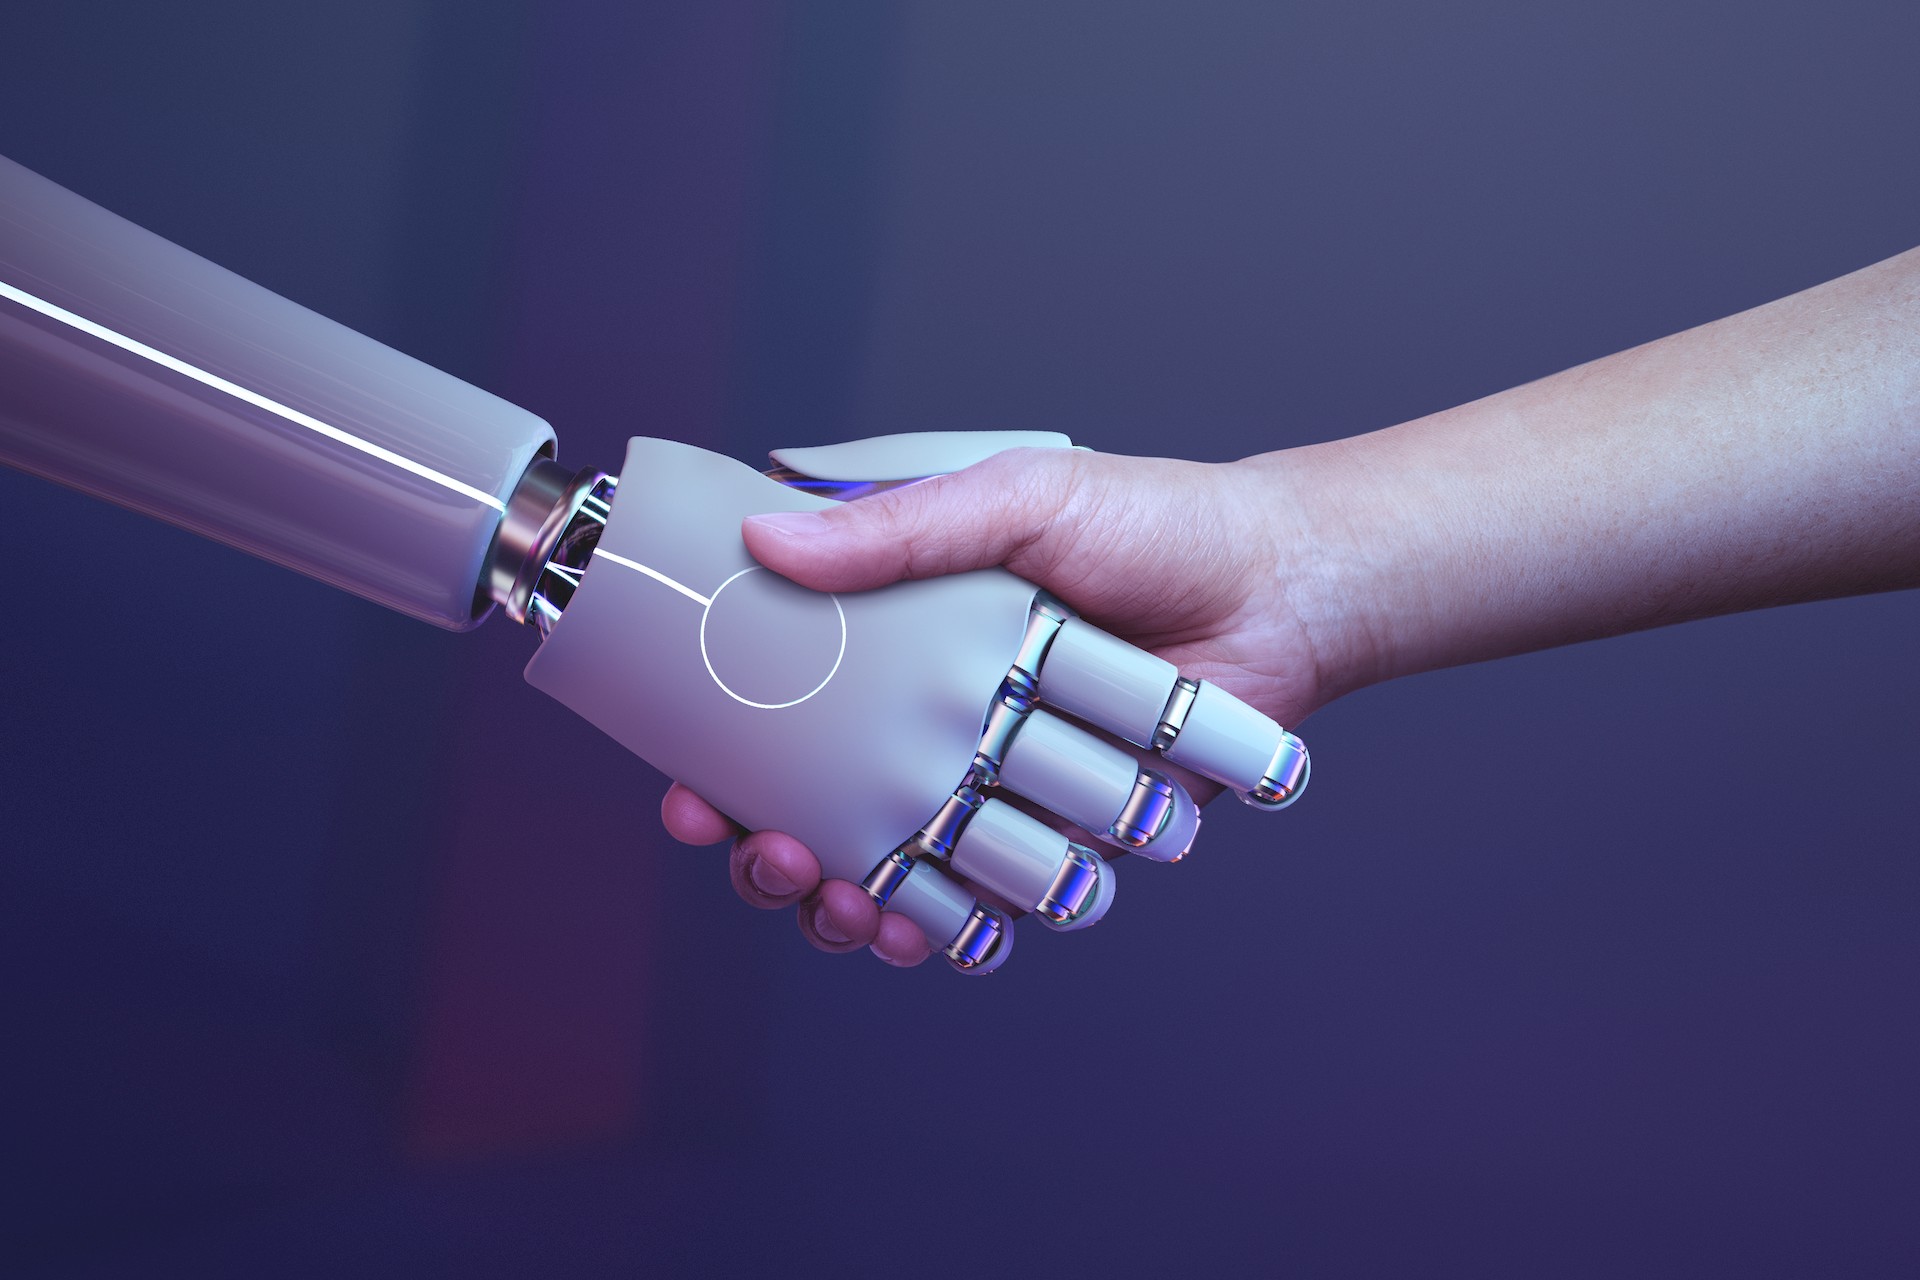 Từng bước đạt tới trí tuệ nhân tạo mà chúng ta mơ ước cùng AI Alliance